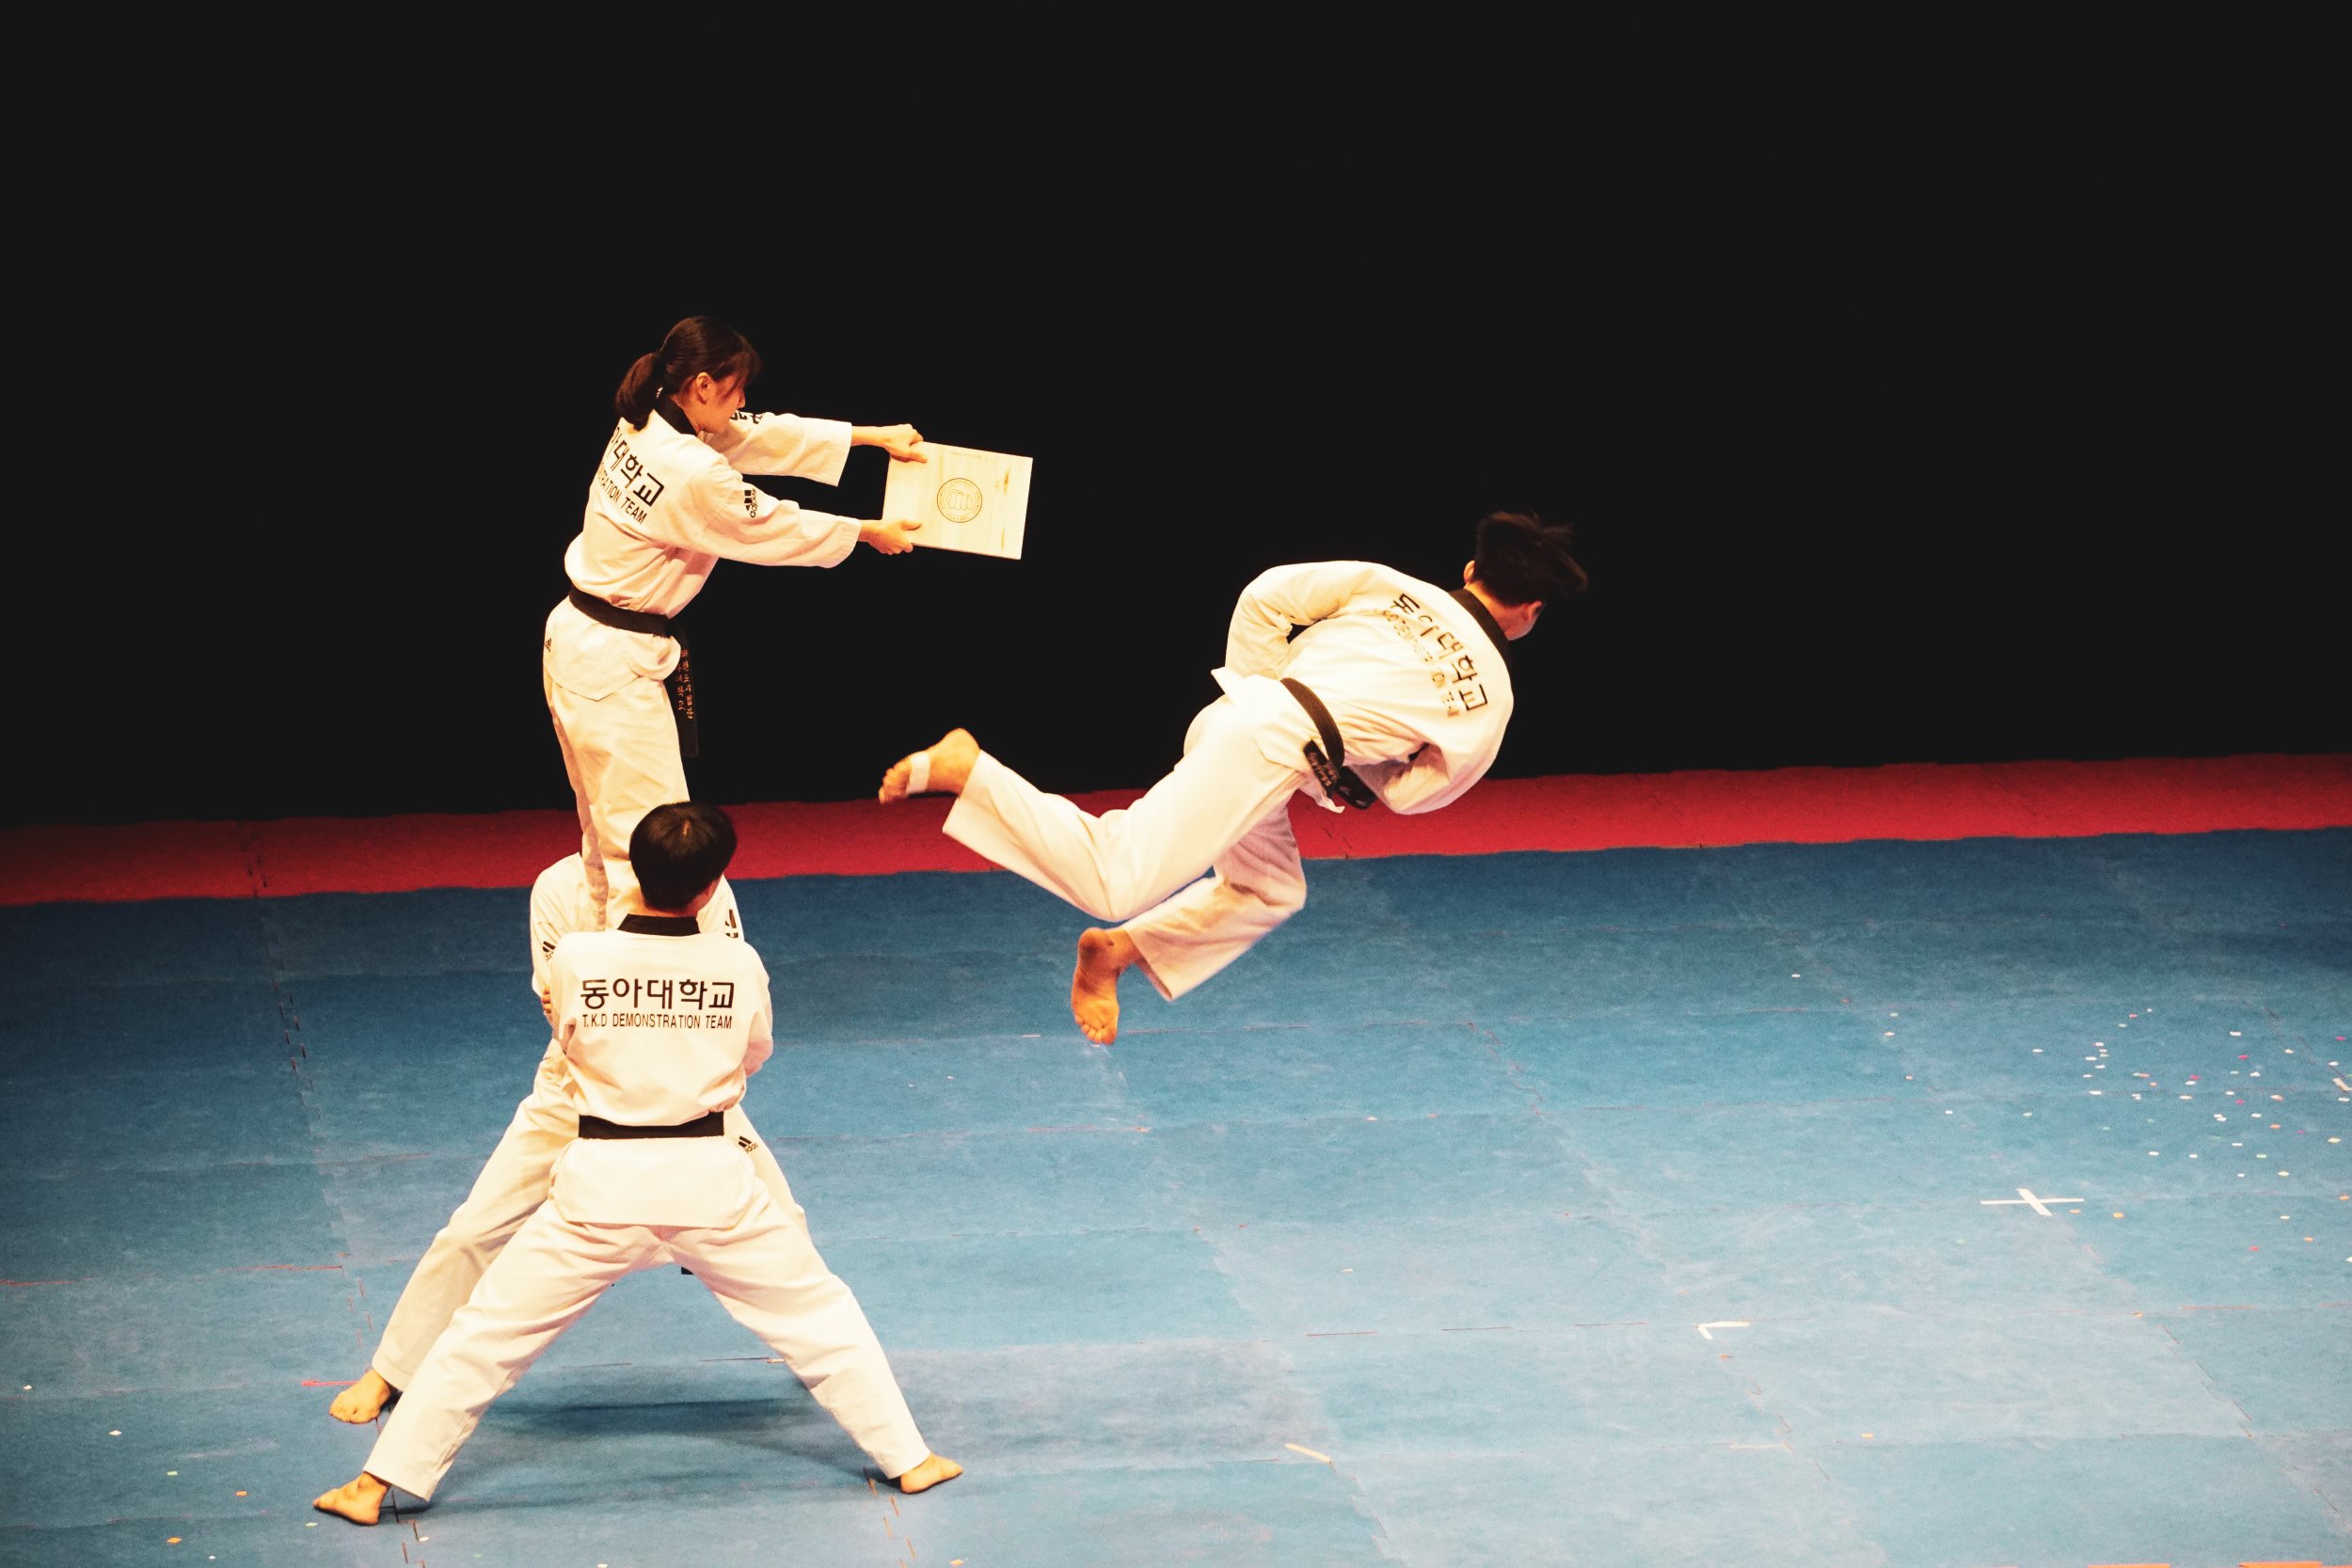 Ein Taekwondo Kämpfer bei der Ausführung eines Tritts